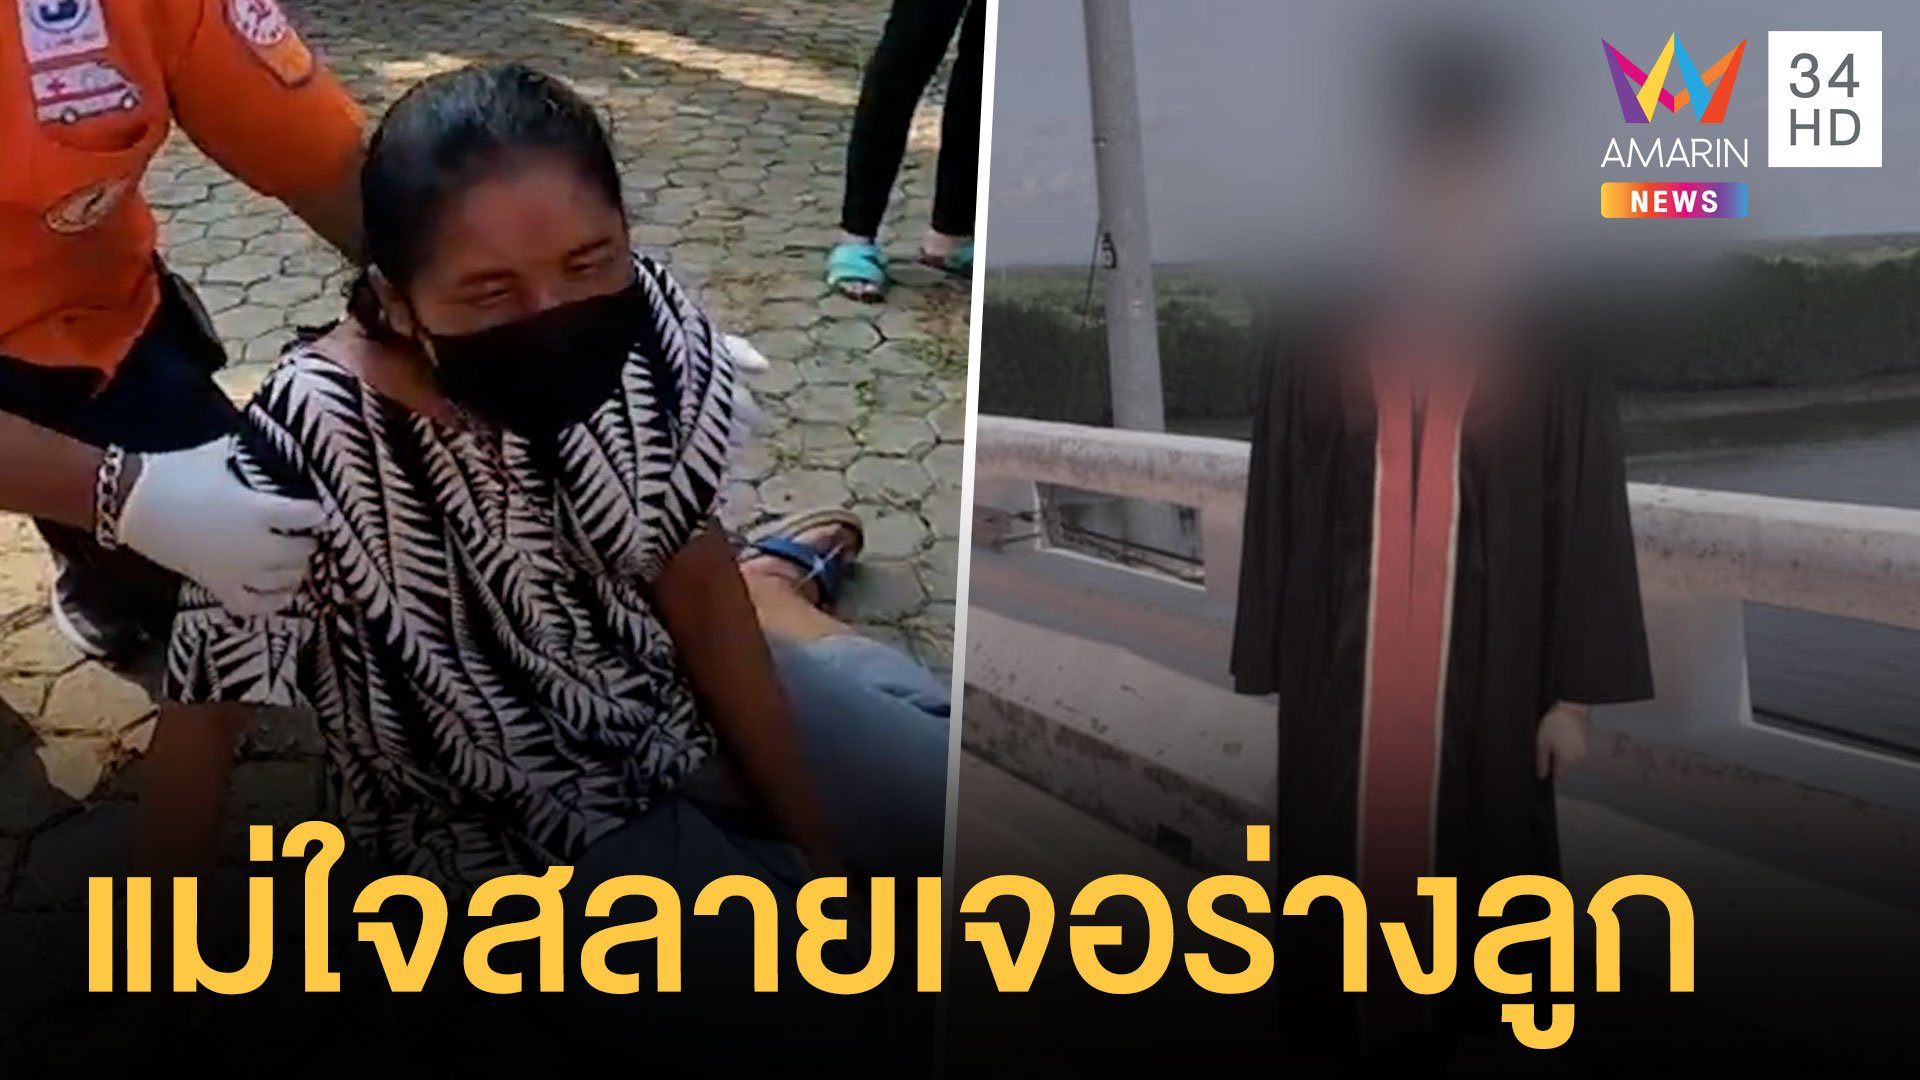 พบศพหนุ่มนักศึกษา กระโดดสะพานประแสสิน | ข่าวเที่ยงอมรินทร์ | 2 พ.ค. 64 | AMARIN TVHD34